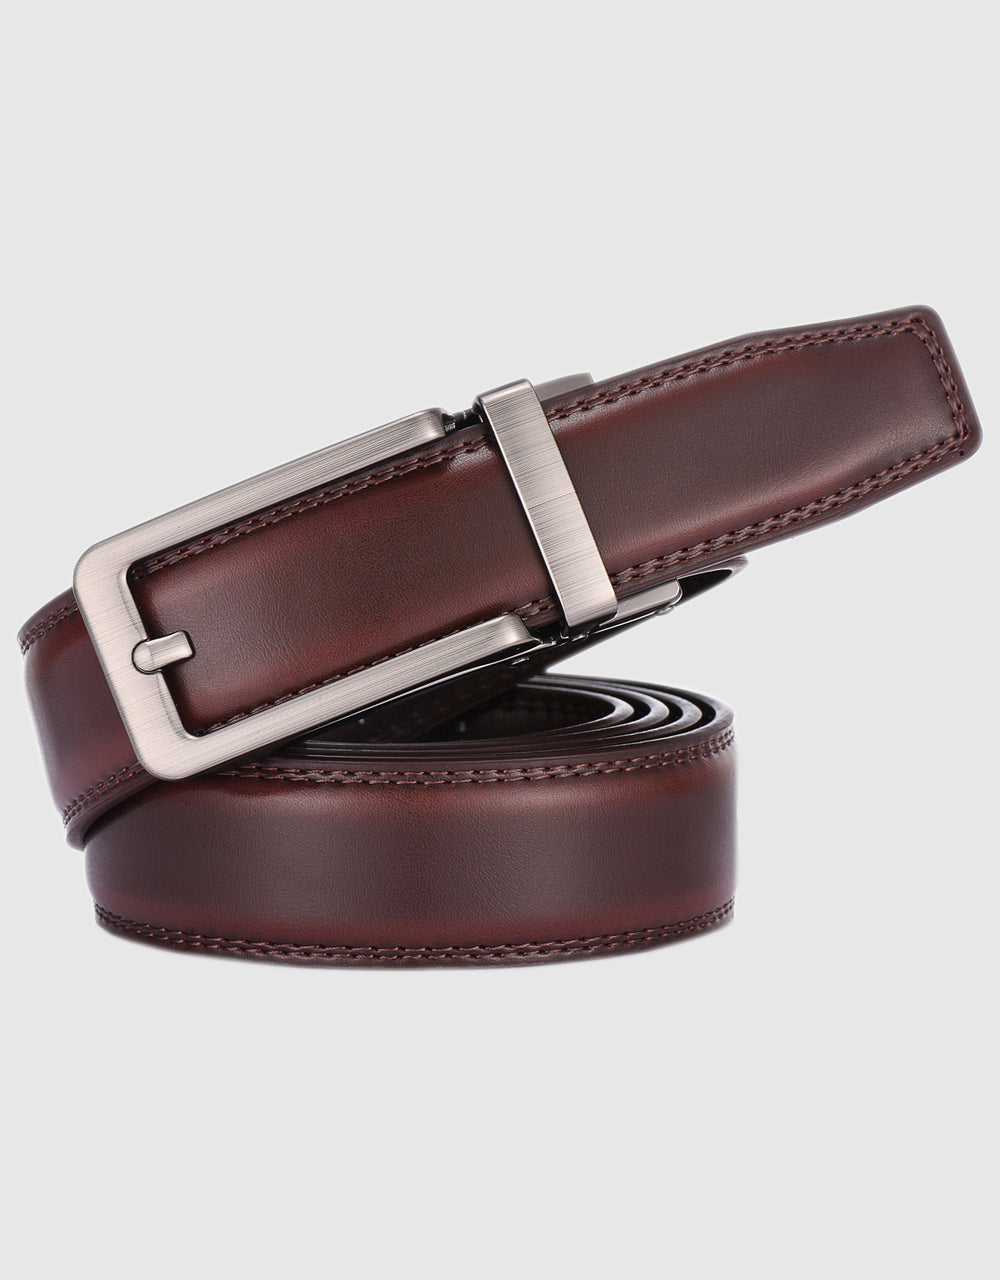 Gallery Seven Leather Click Belt , Adjustable Ratchet Belt For Men